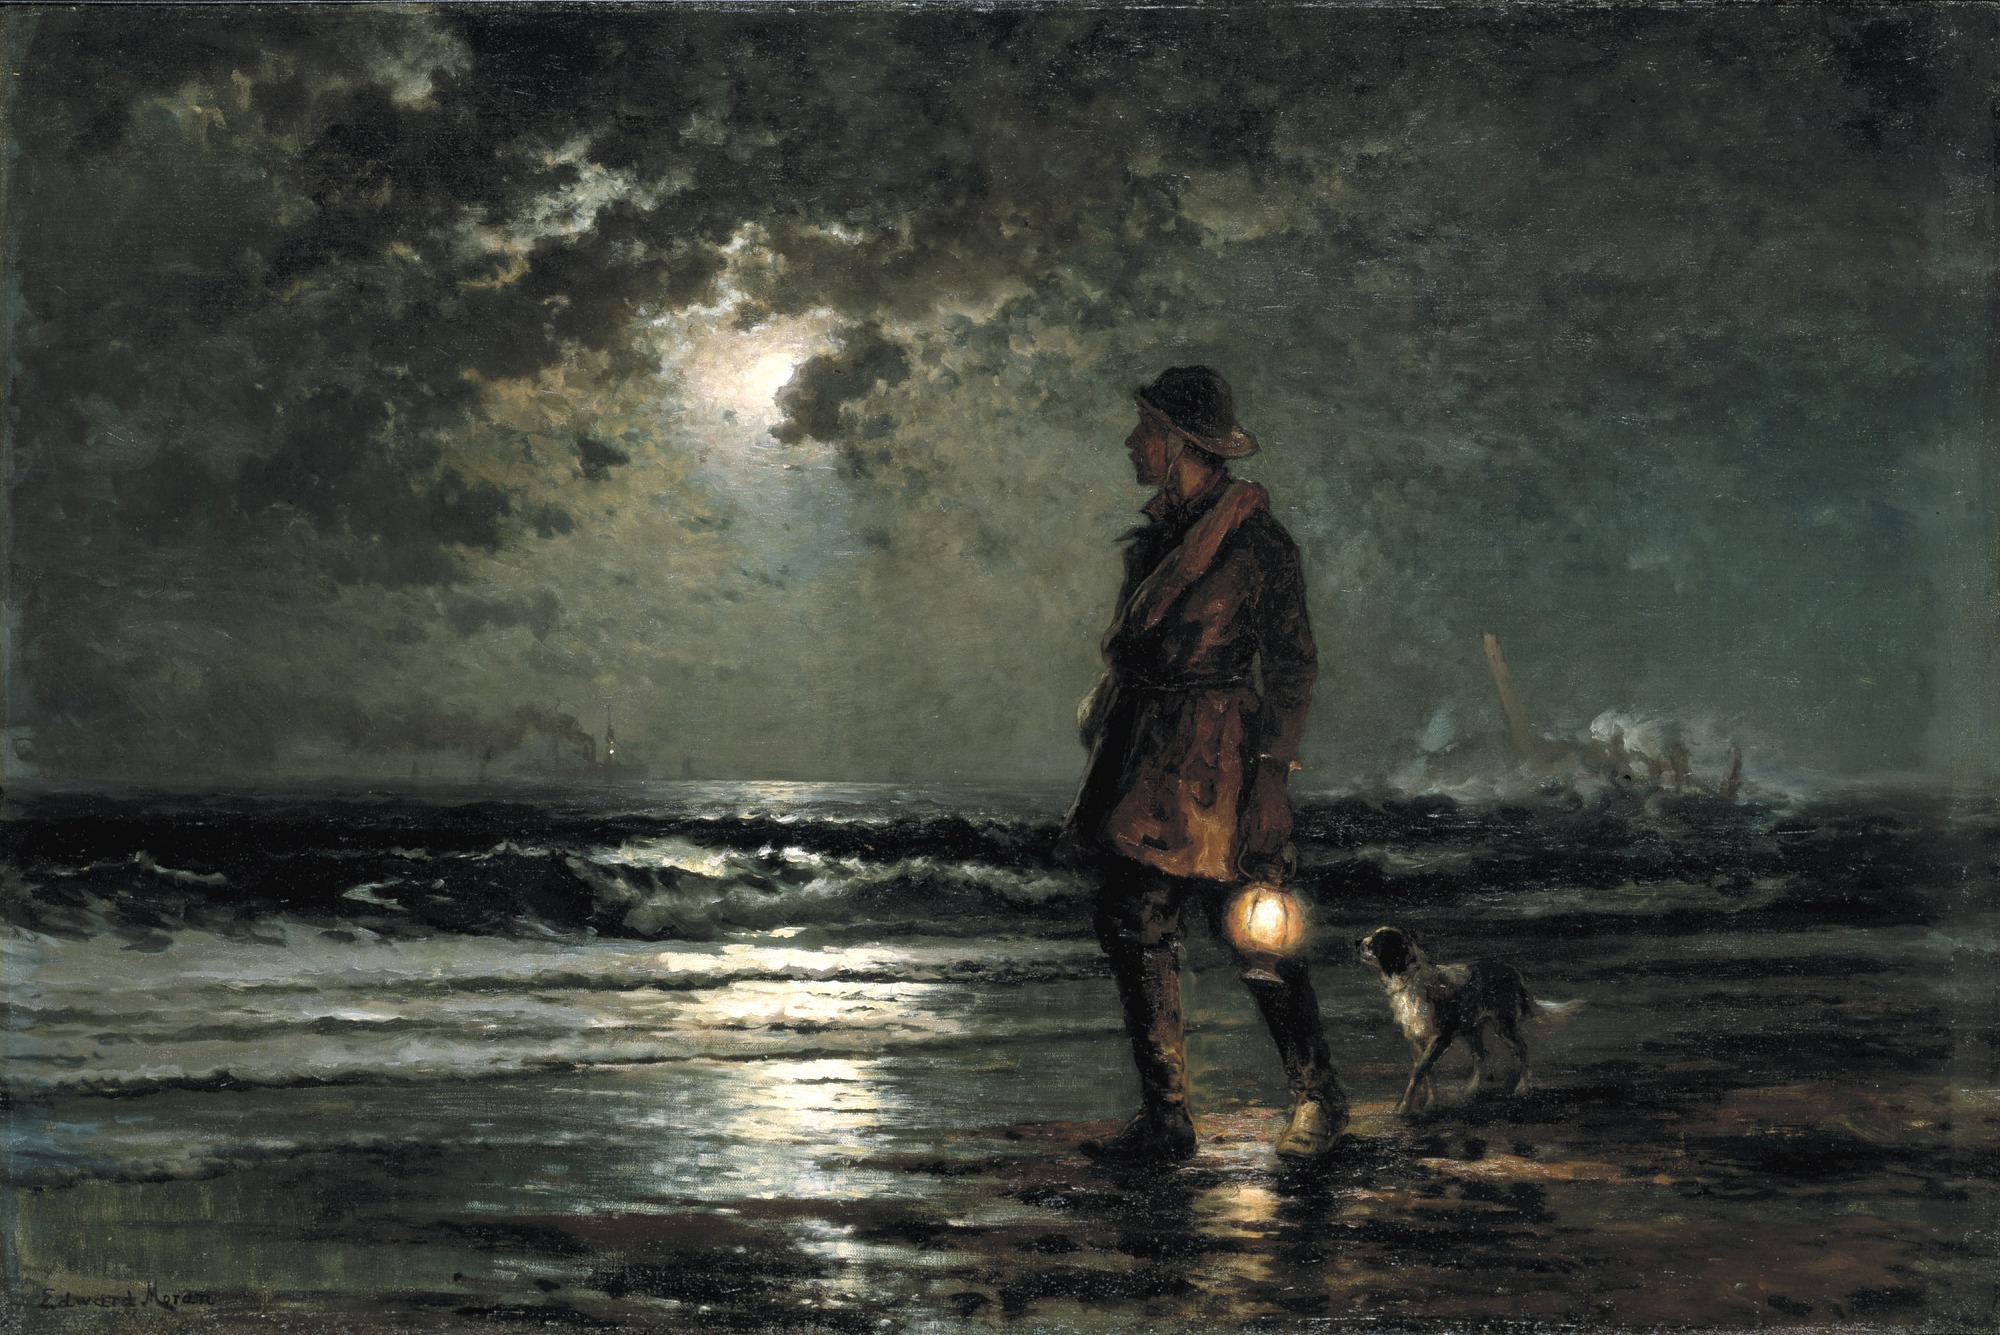 Man in brown jacket walking on water